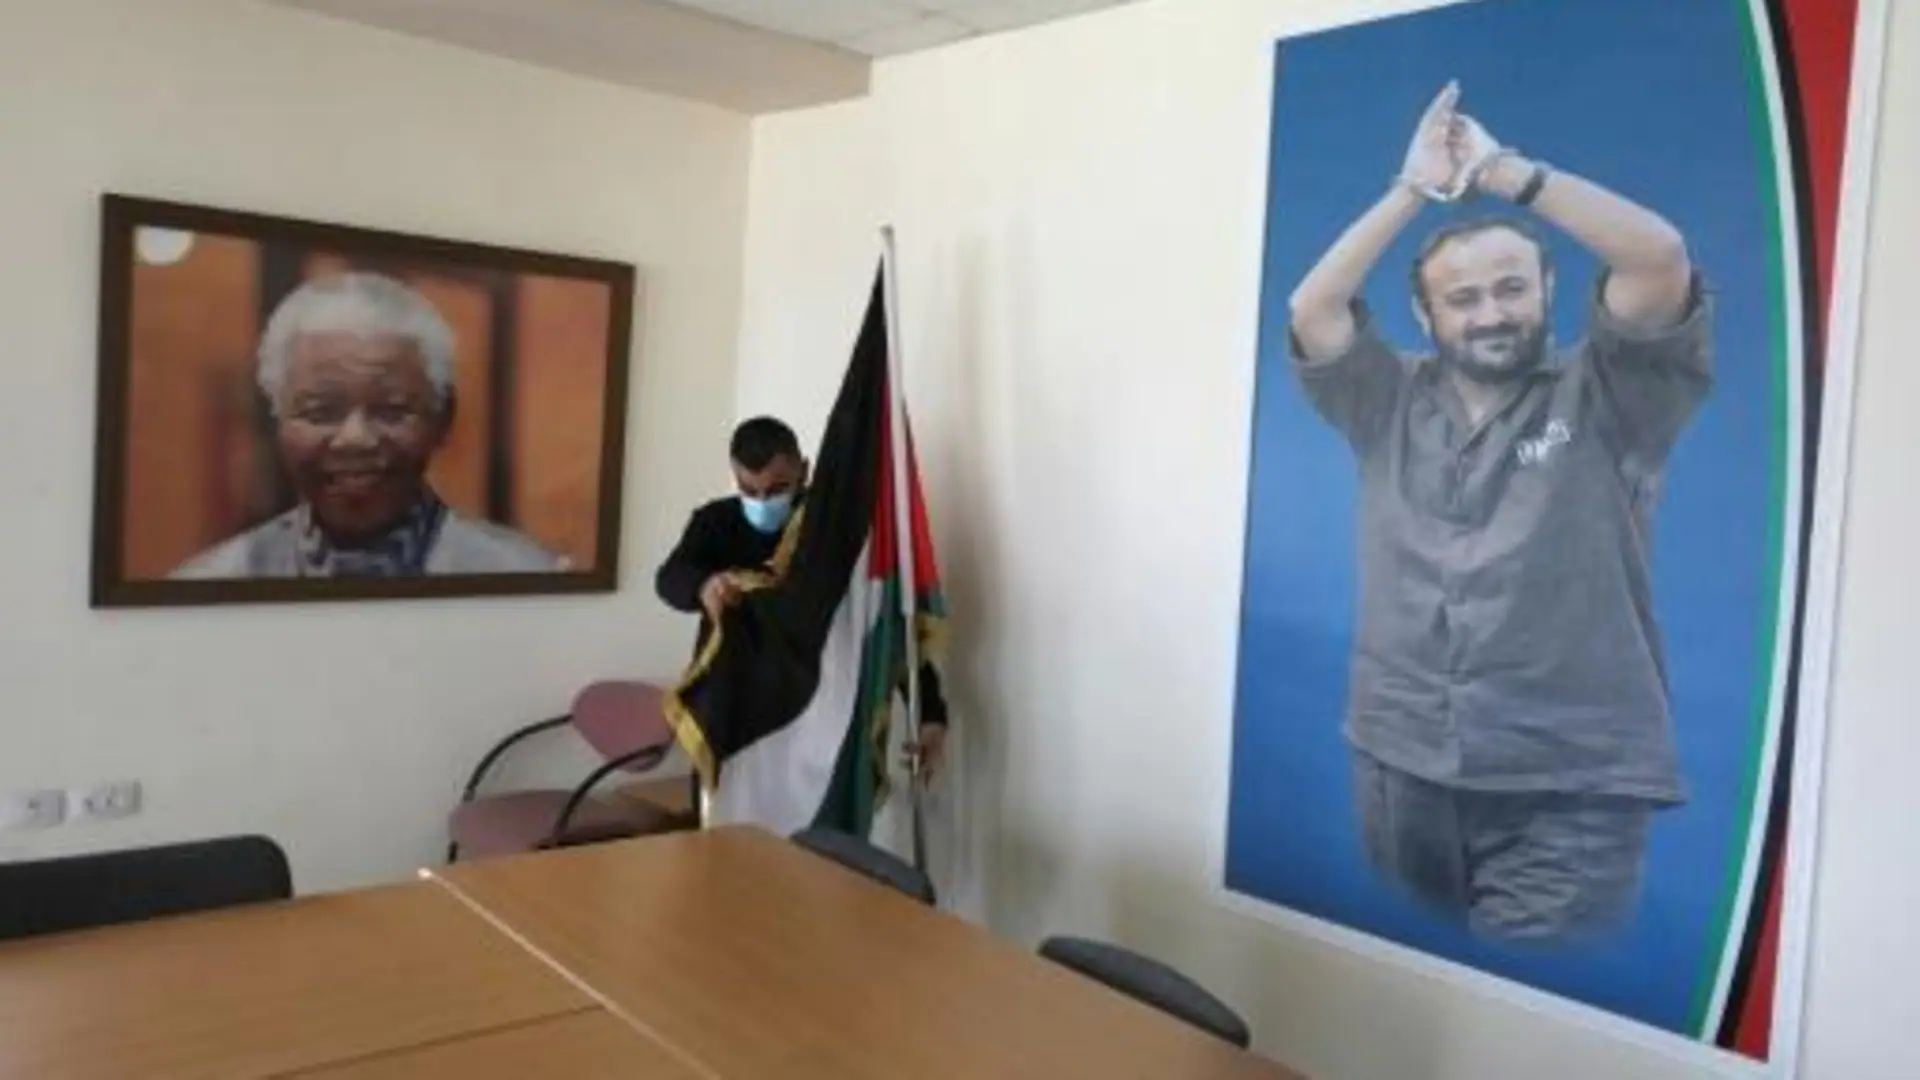 صورة رئيس جنوب أفريقيا الراحل نيلسون مانديلا والقيادي الفلسطيني المسجون مروان البرغوثي في مكتب لدعم البرغوثي في مدينة رام الله